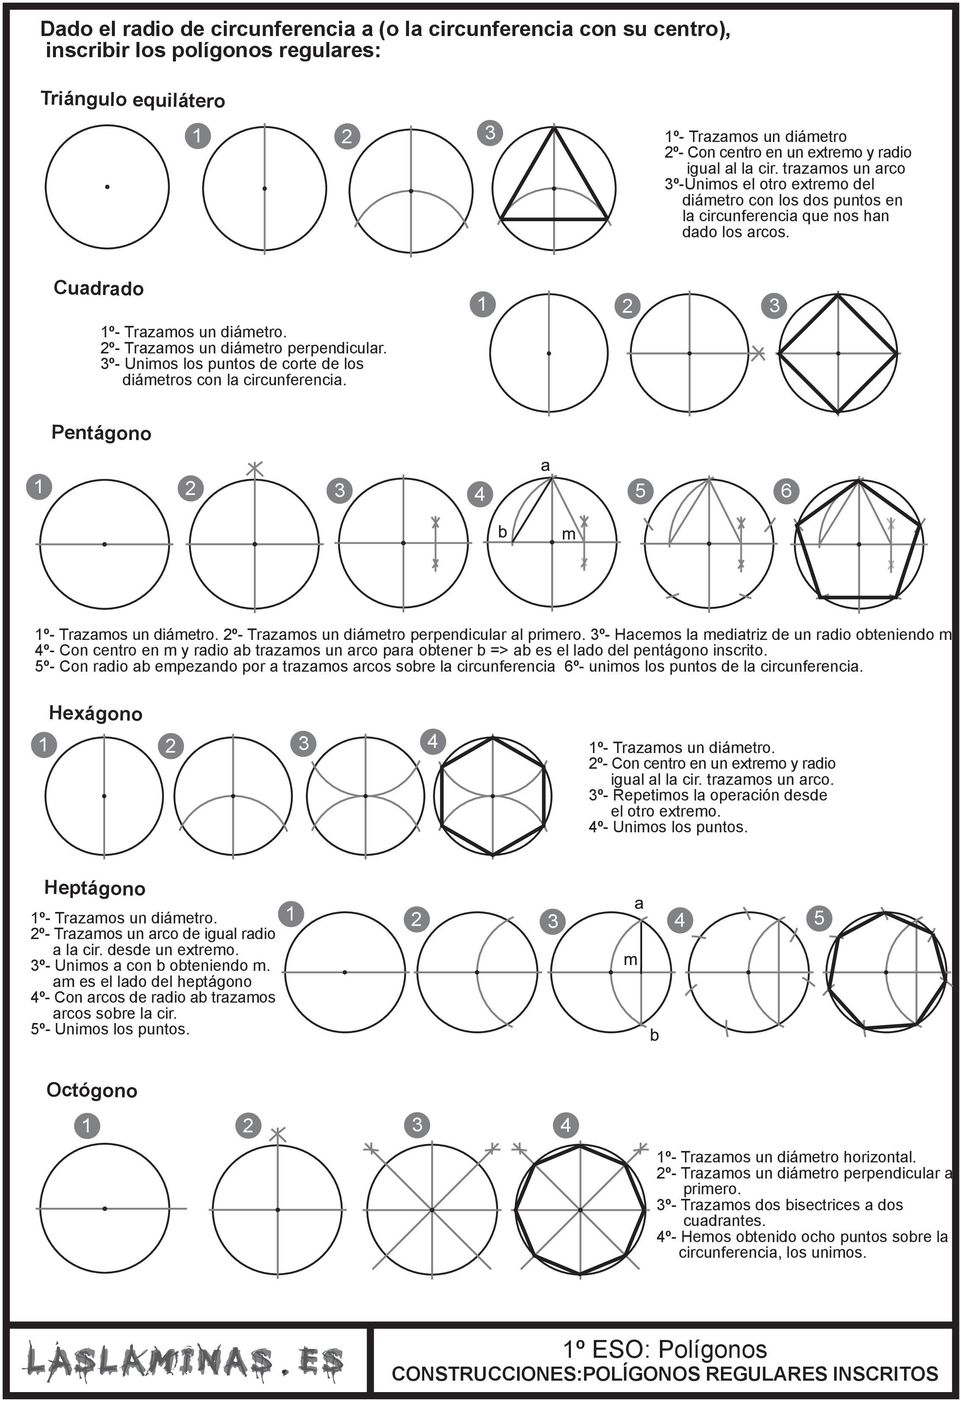 2º- Trazamos un diámetro perpendicular. º- Unimos los puntos de corte de los diámetros con la circunferencia. Pentágono 1 2 4 5 1º- Trazamos un diámetro.